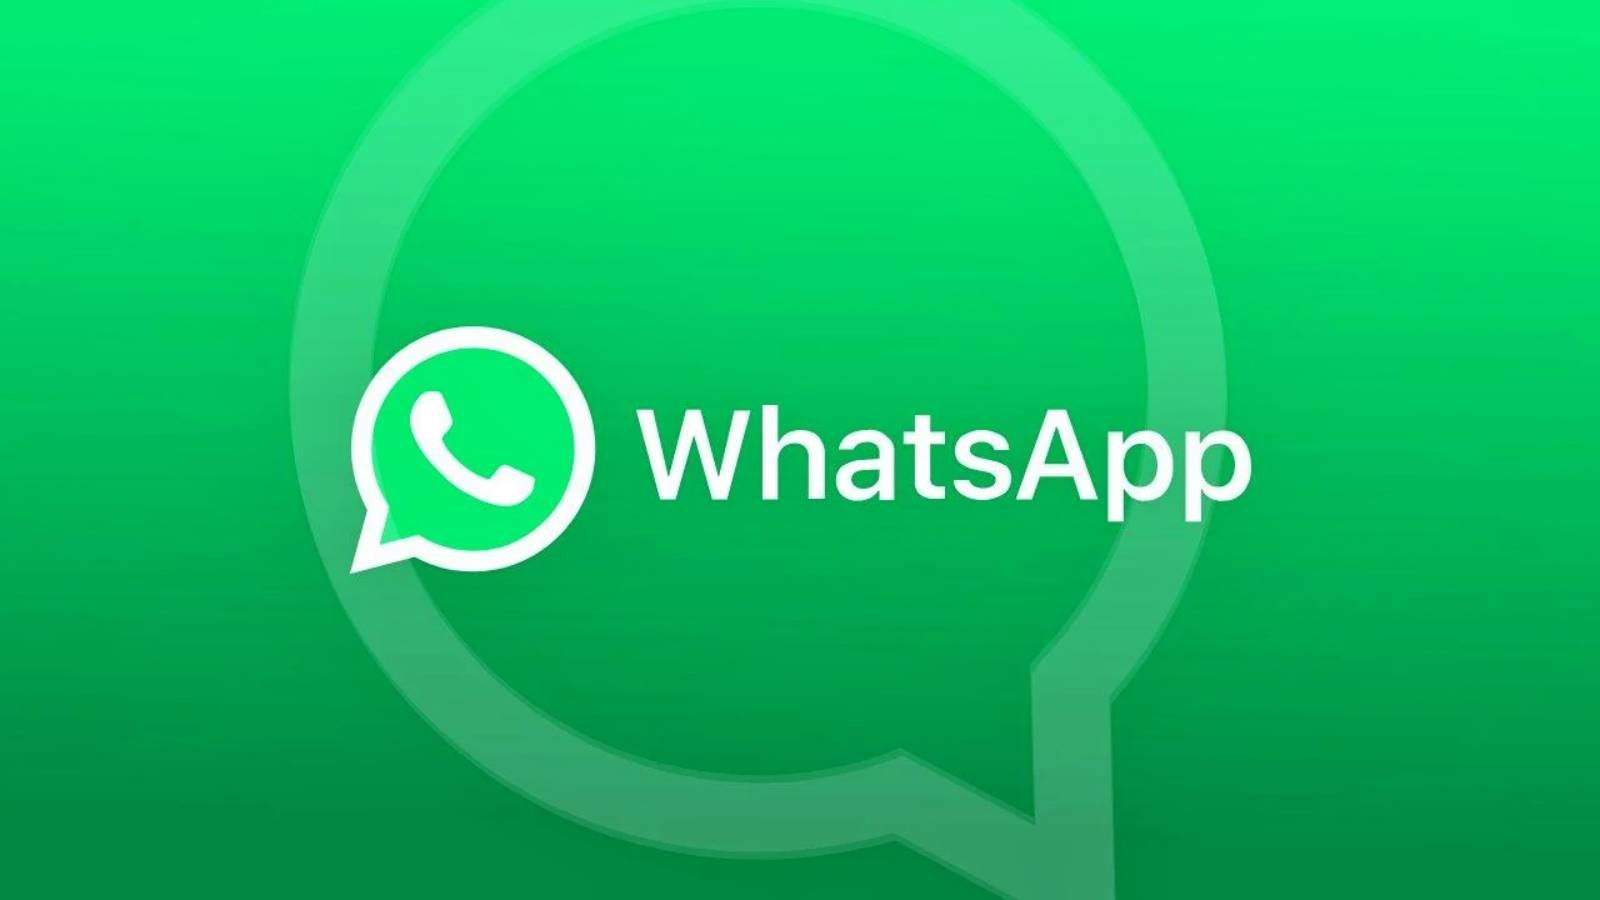 WhatsApp Planurile Oficiale SCHIMBARILOR Anuntate Facebook